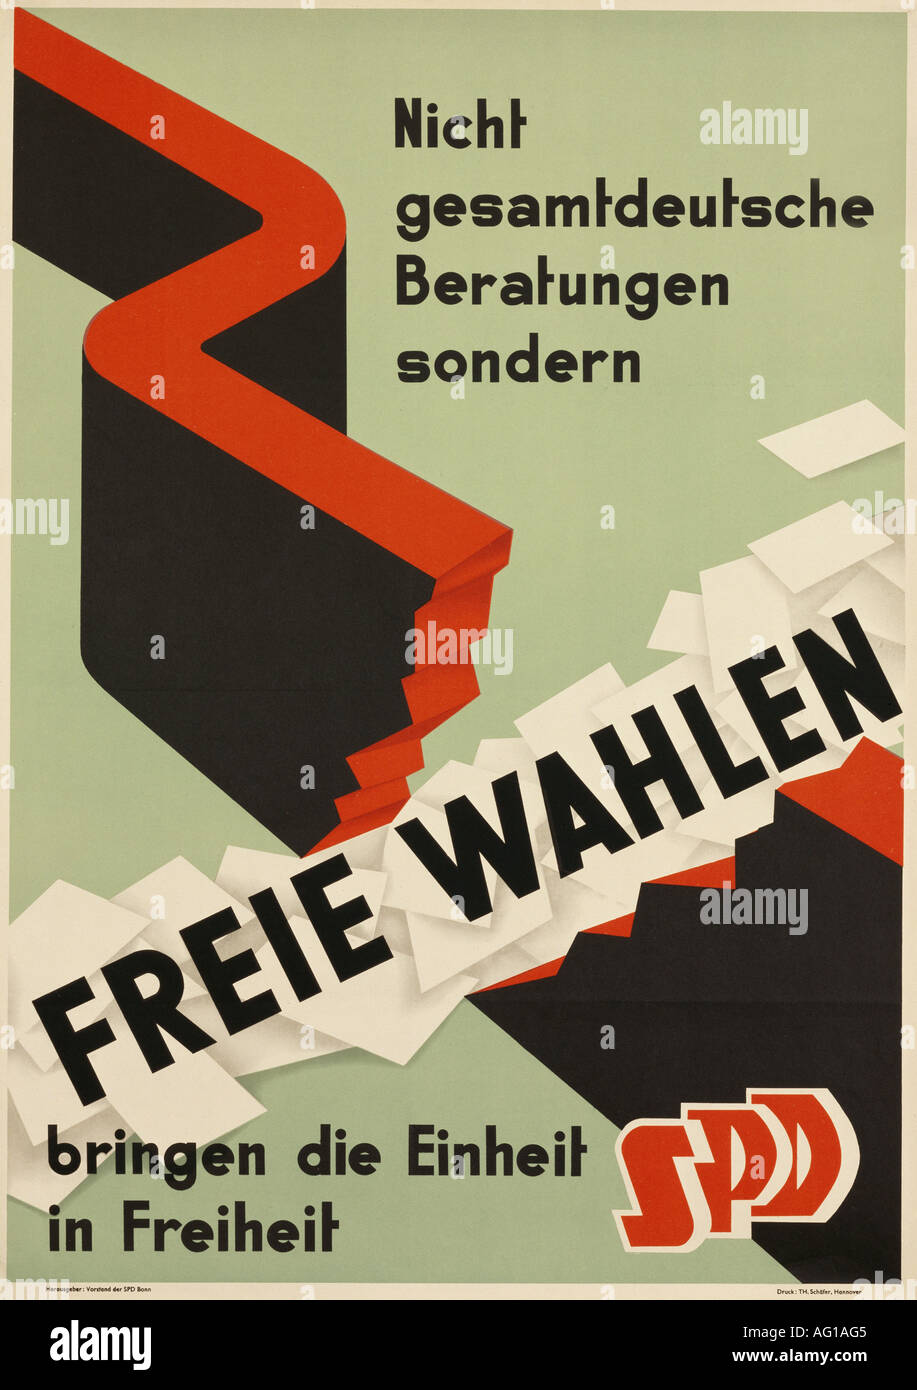 Geografie/Reisen, Deutschland, Politik, "Freie Wahlen bringen die Einheit in Freiheit", Sozialdemokratische Partei Deutschlands (SPD), Bonn, ca. 1950, Plakat, Stockfoto